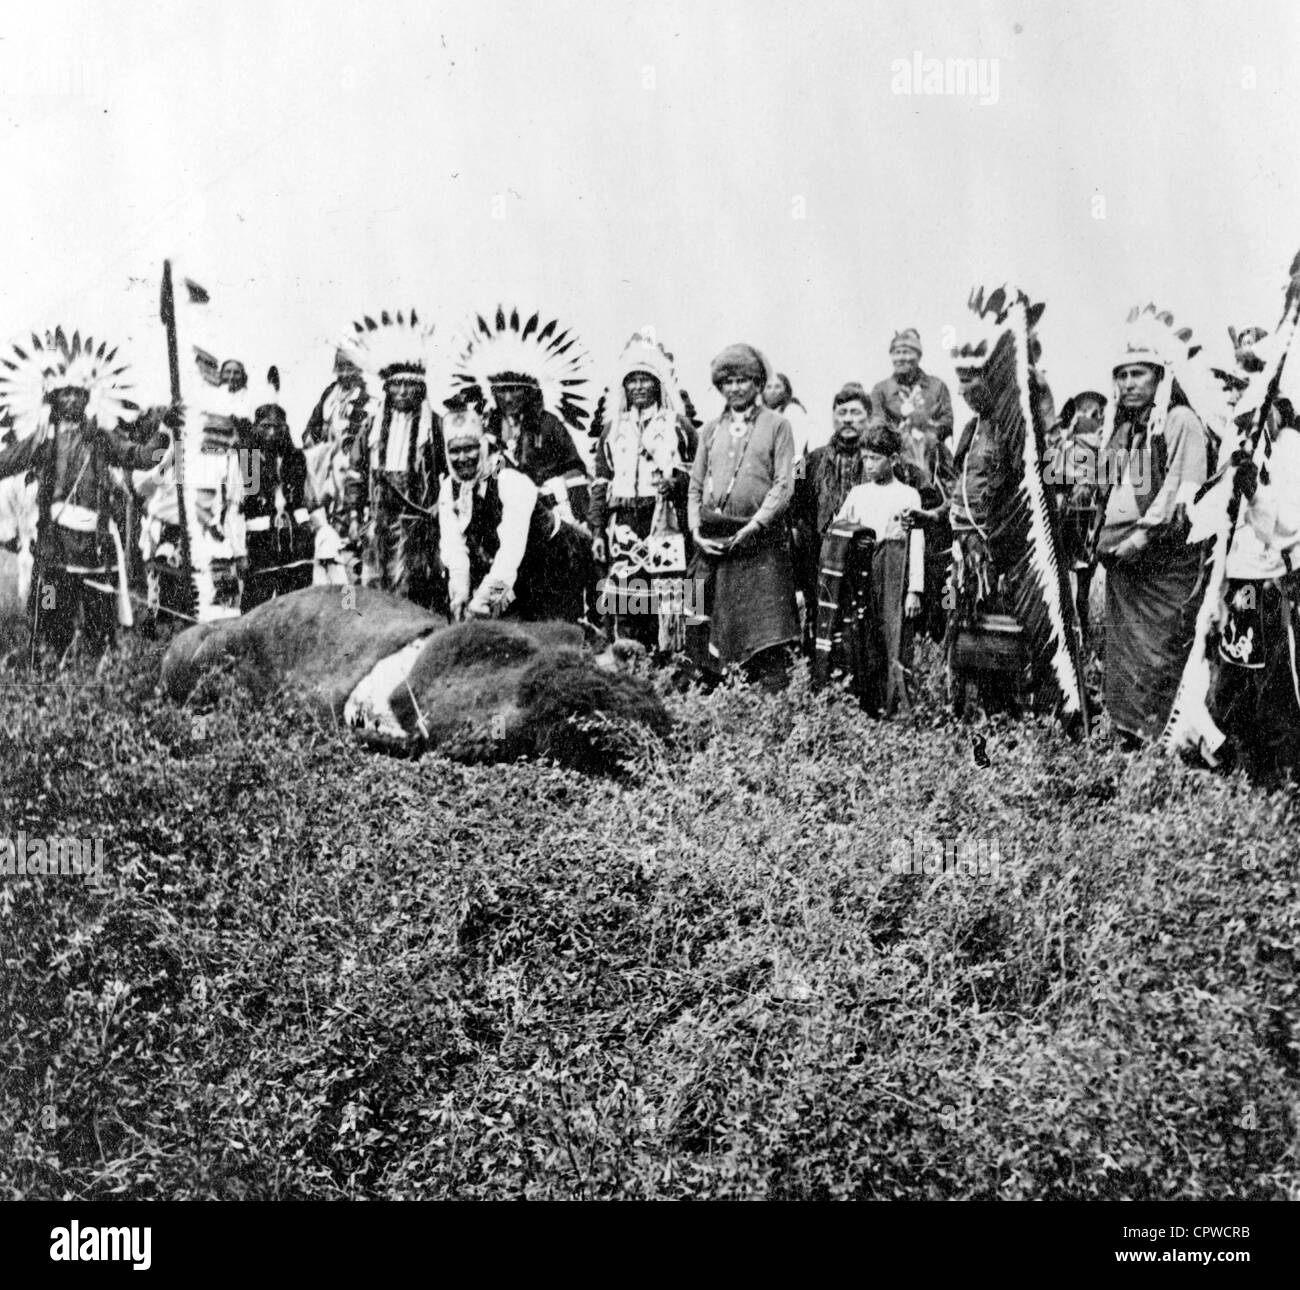 Geronimo's last buffalo. Geronimo debout sur dead buffalo, avec des hommes et des garçons en tenue de cérémonie se tenant derrière lui Banque D'Images